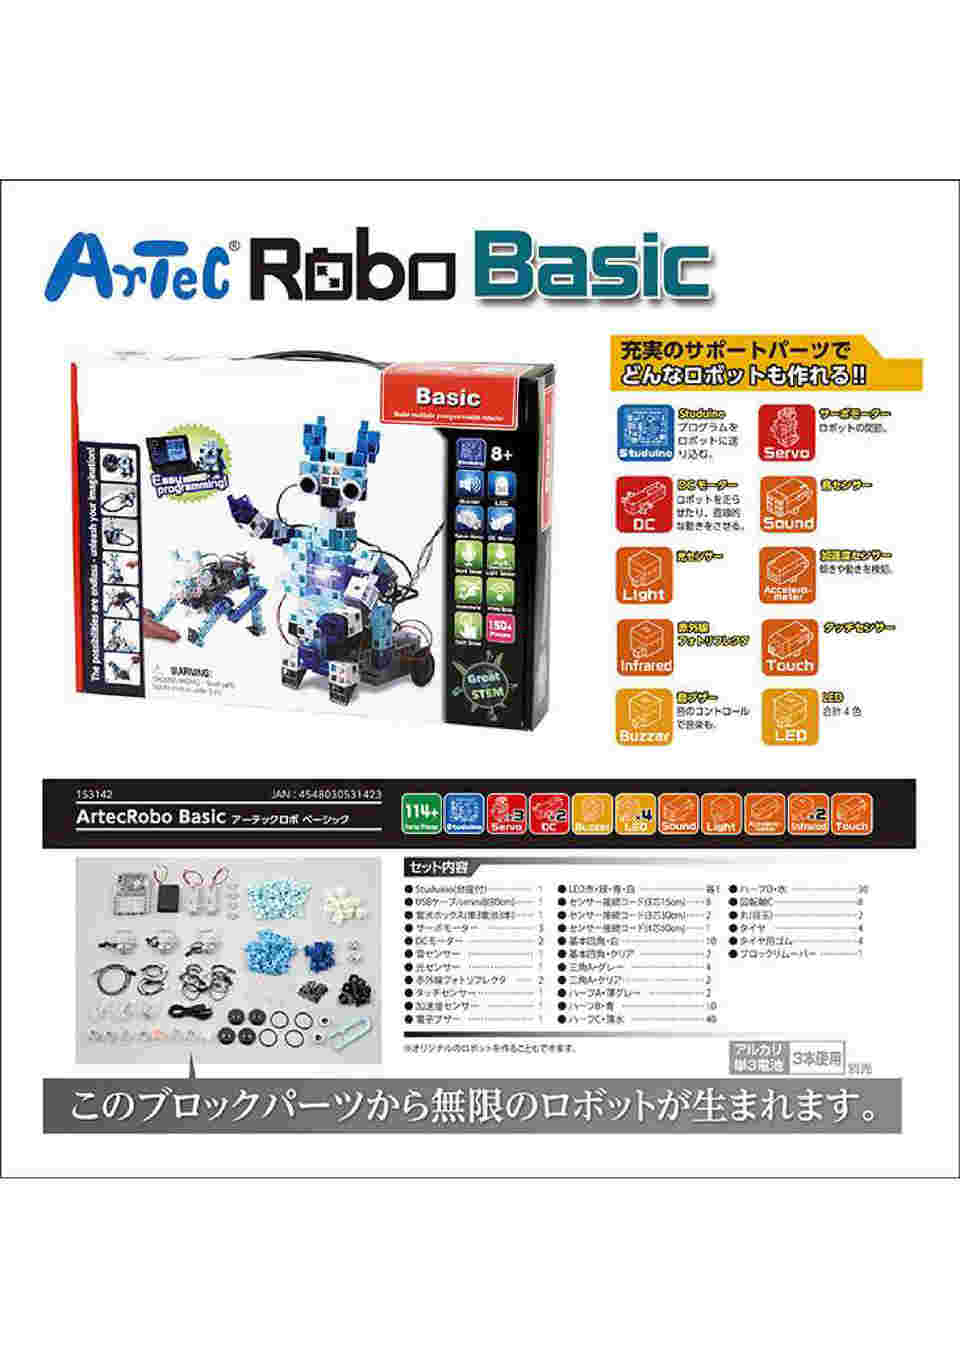 61-6072-76 プログラミング教材(アーテックロボ) Robotist Basic